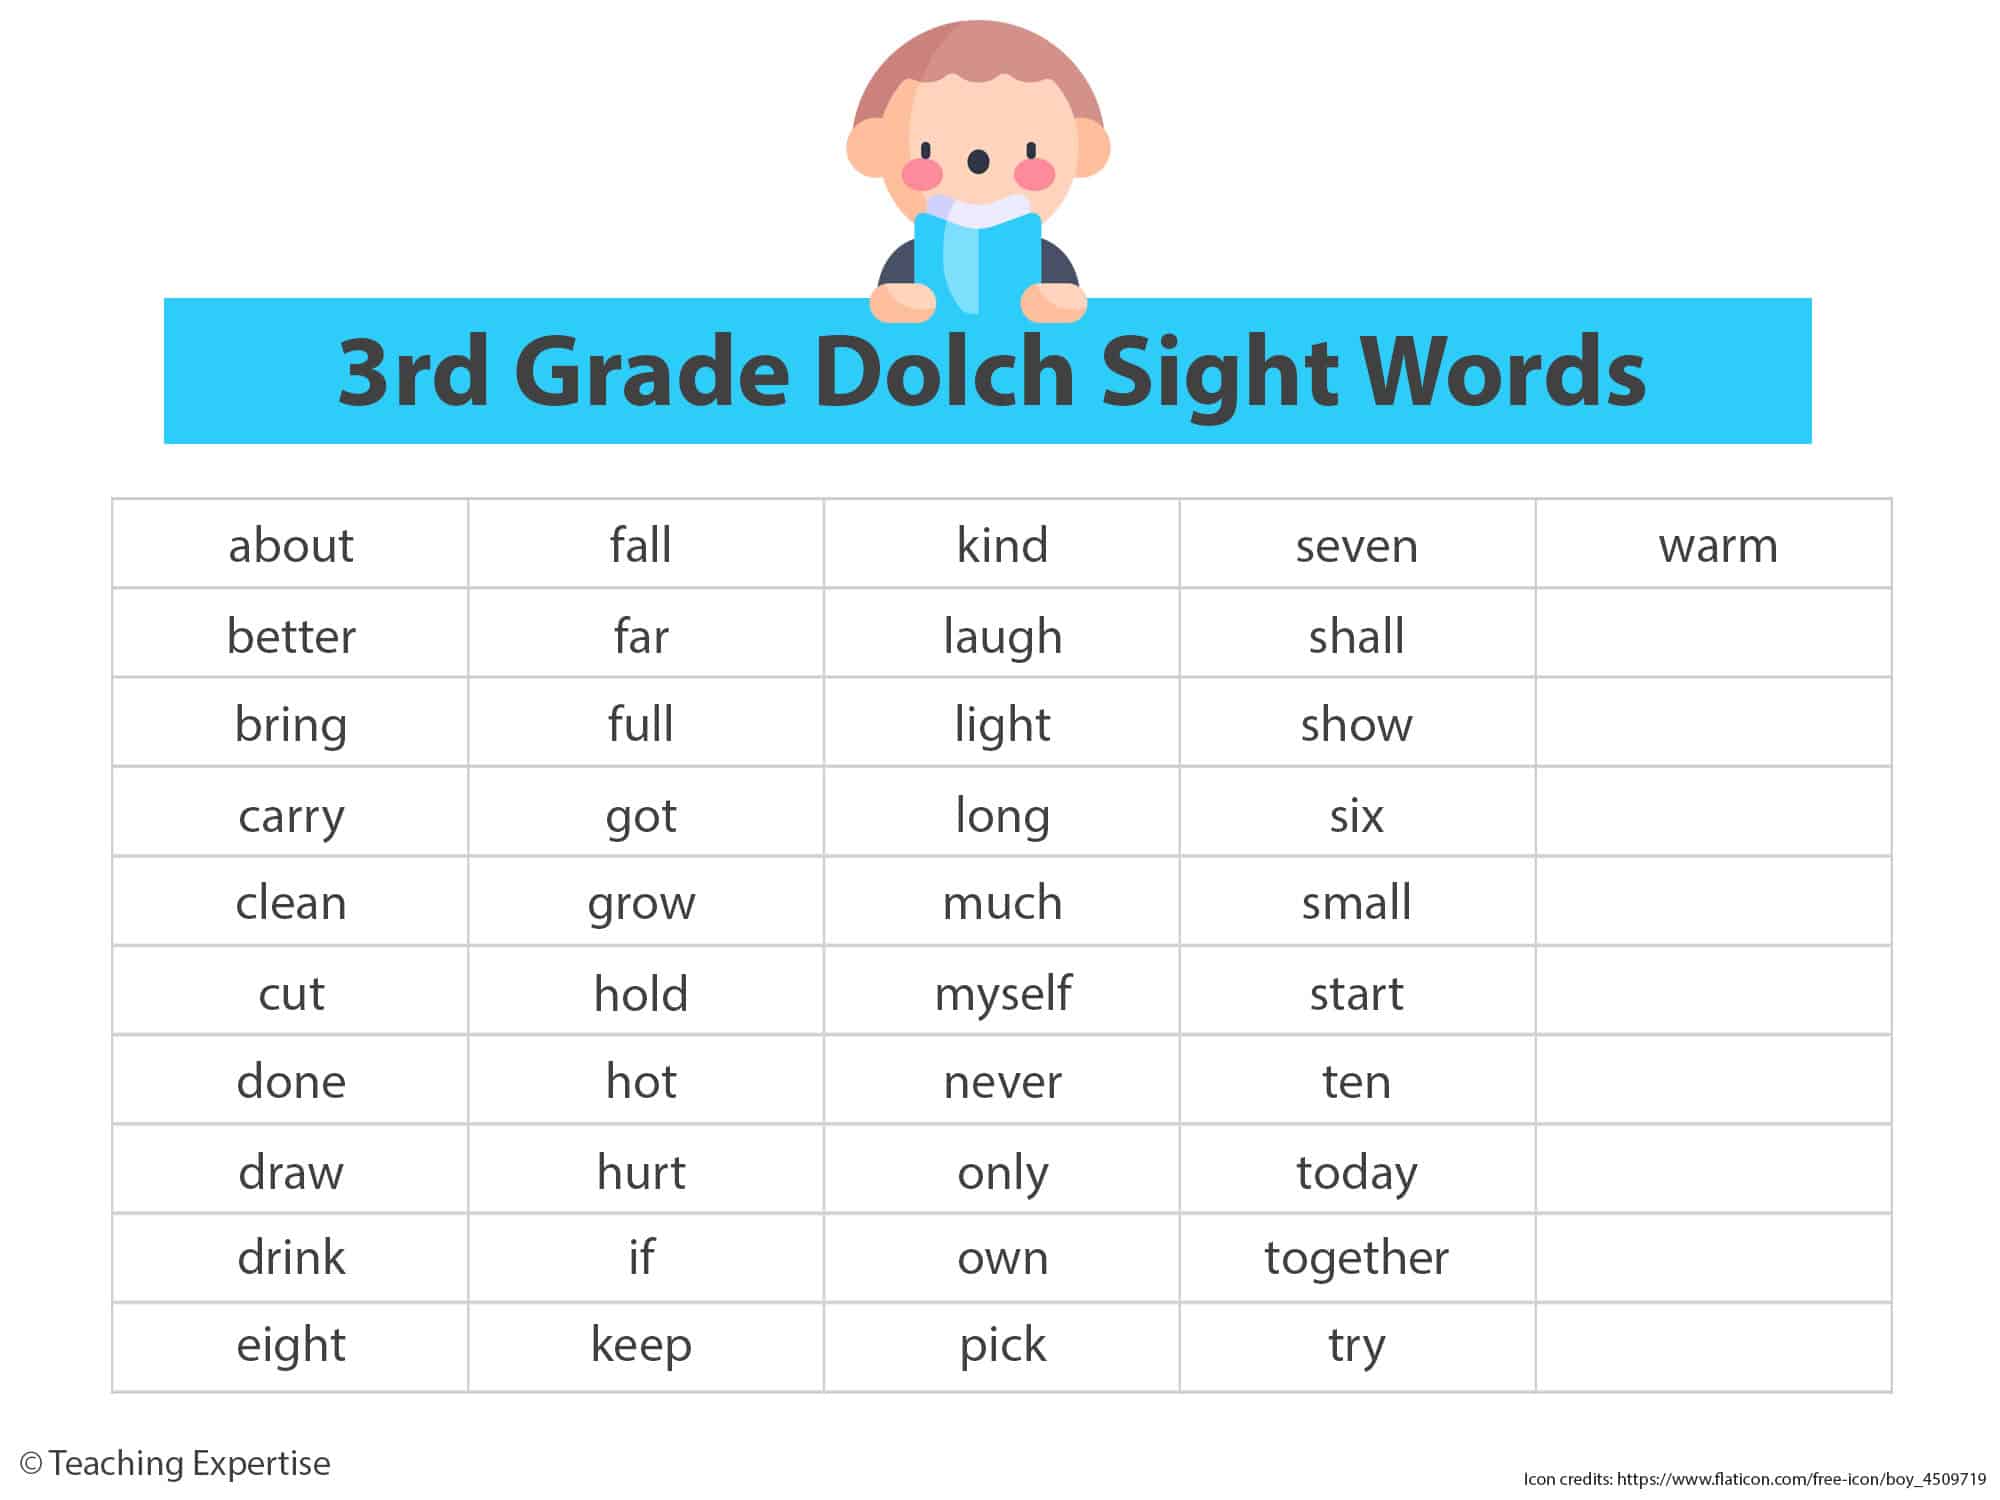 3rd-grade-dolch-sight-words.jpg